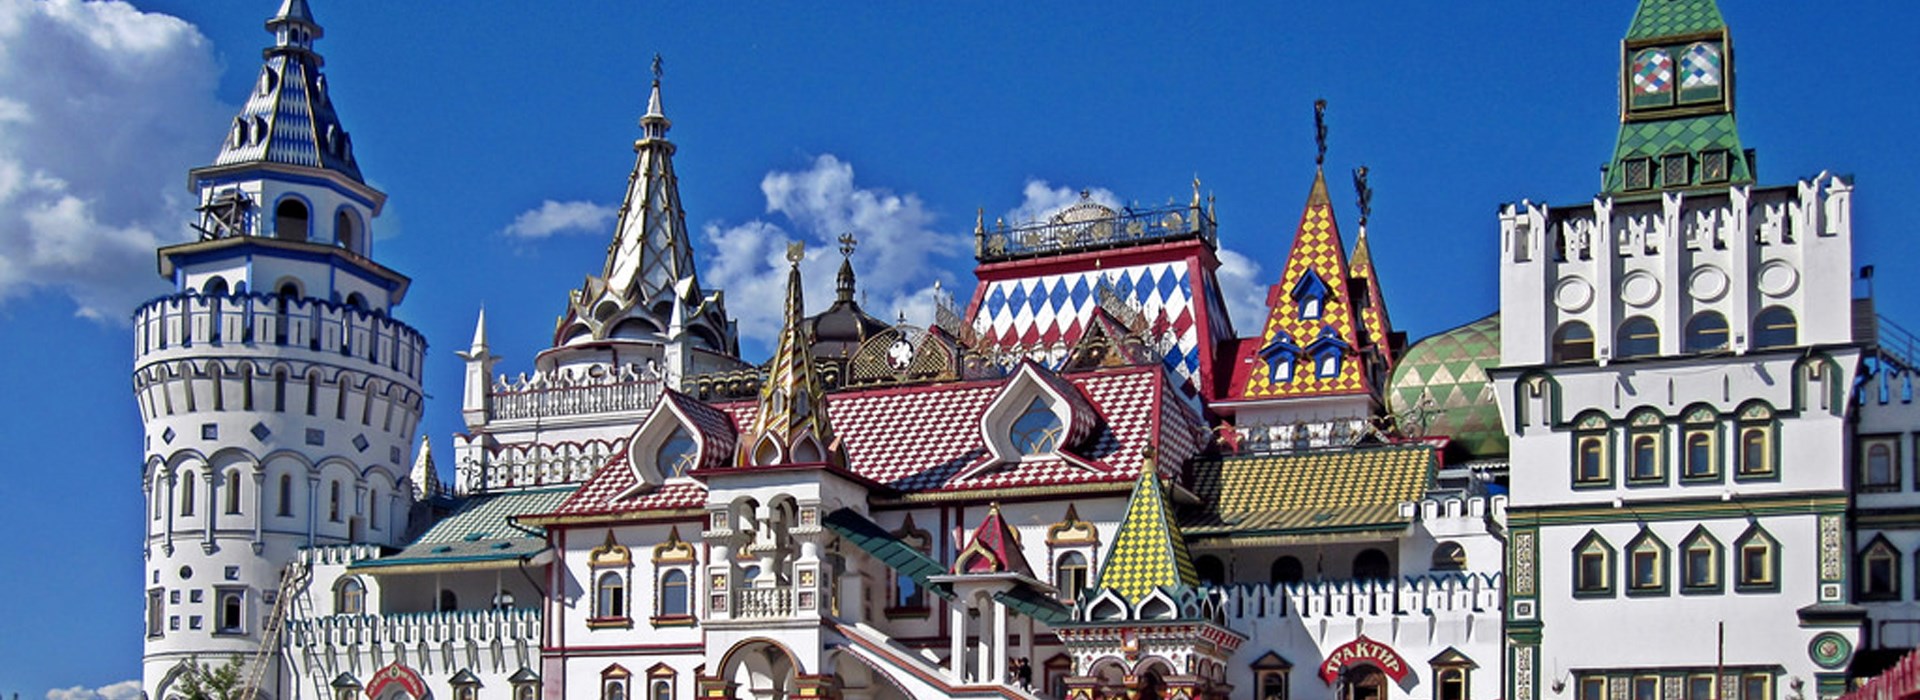 Visiter Le marché d'Izmaïlovo - Russie